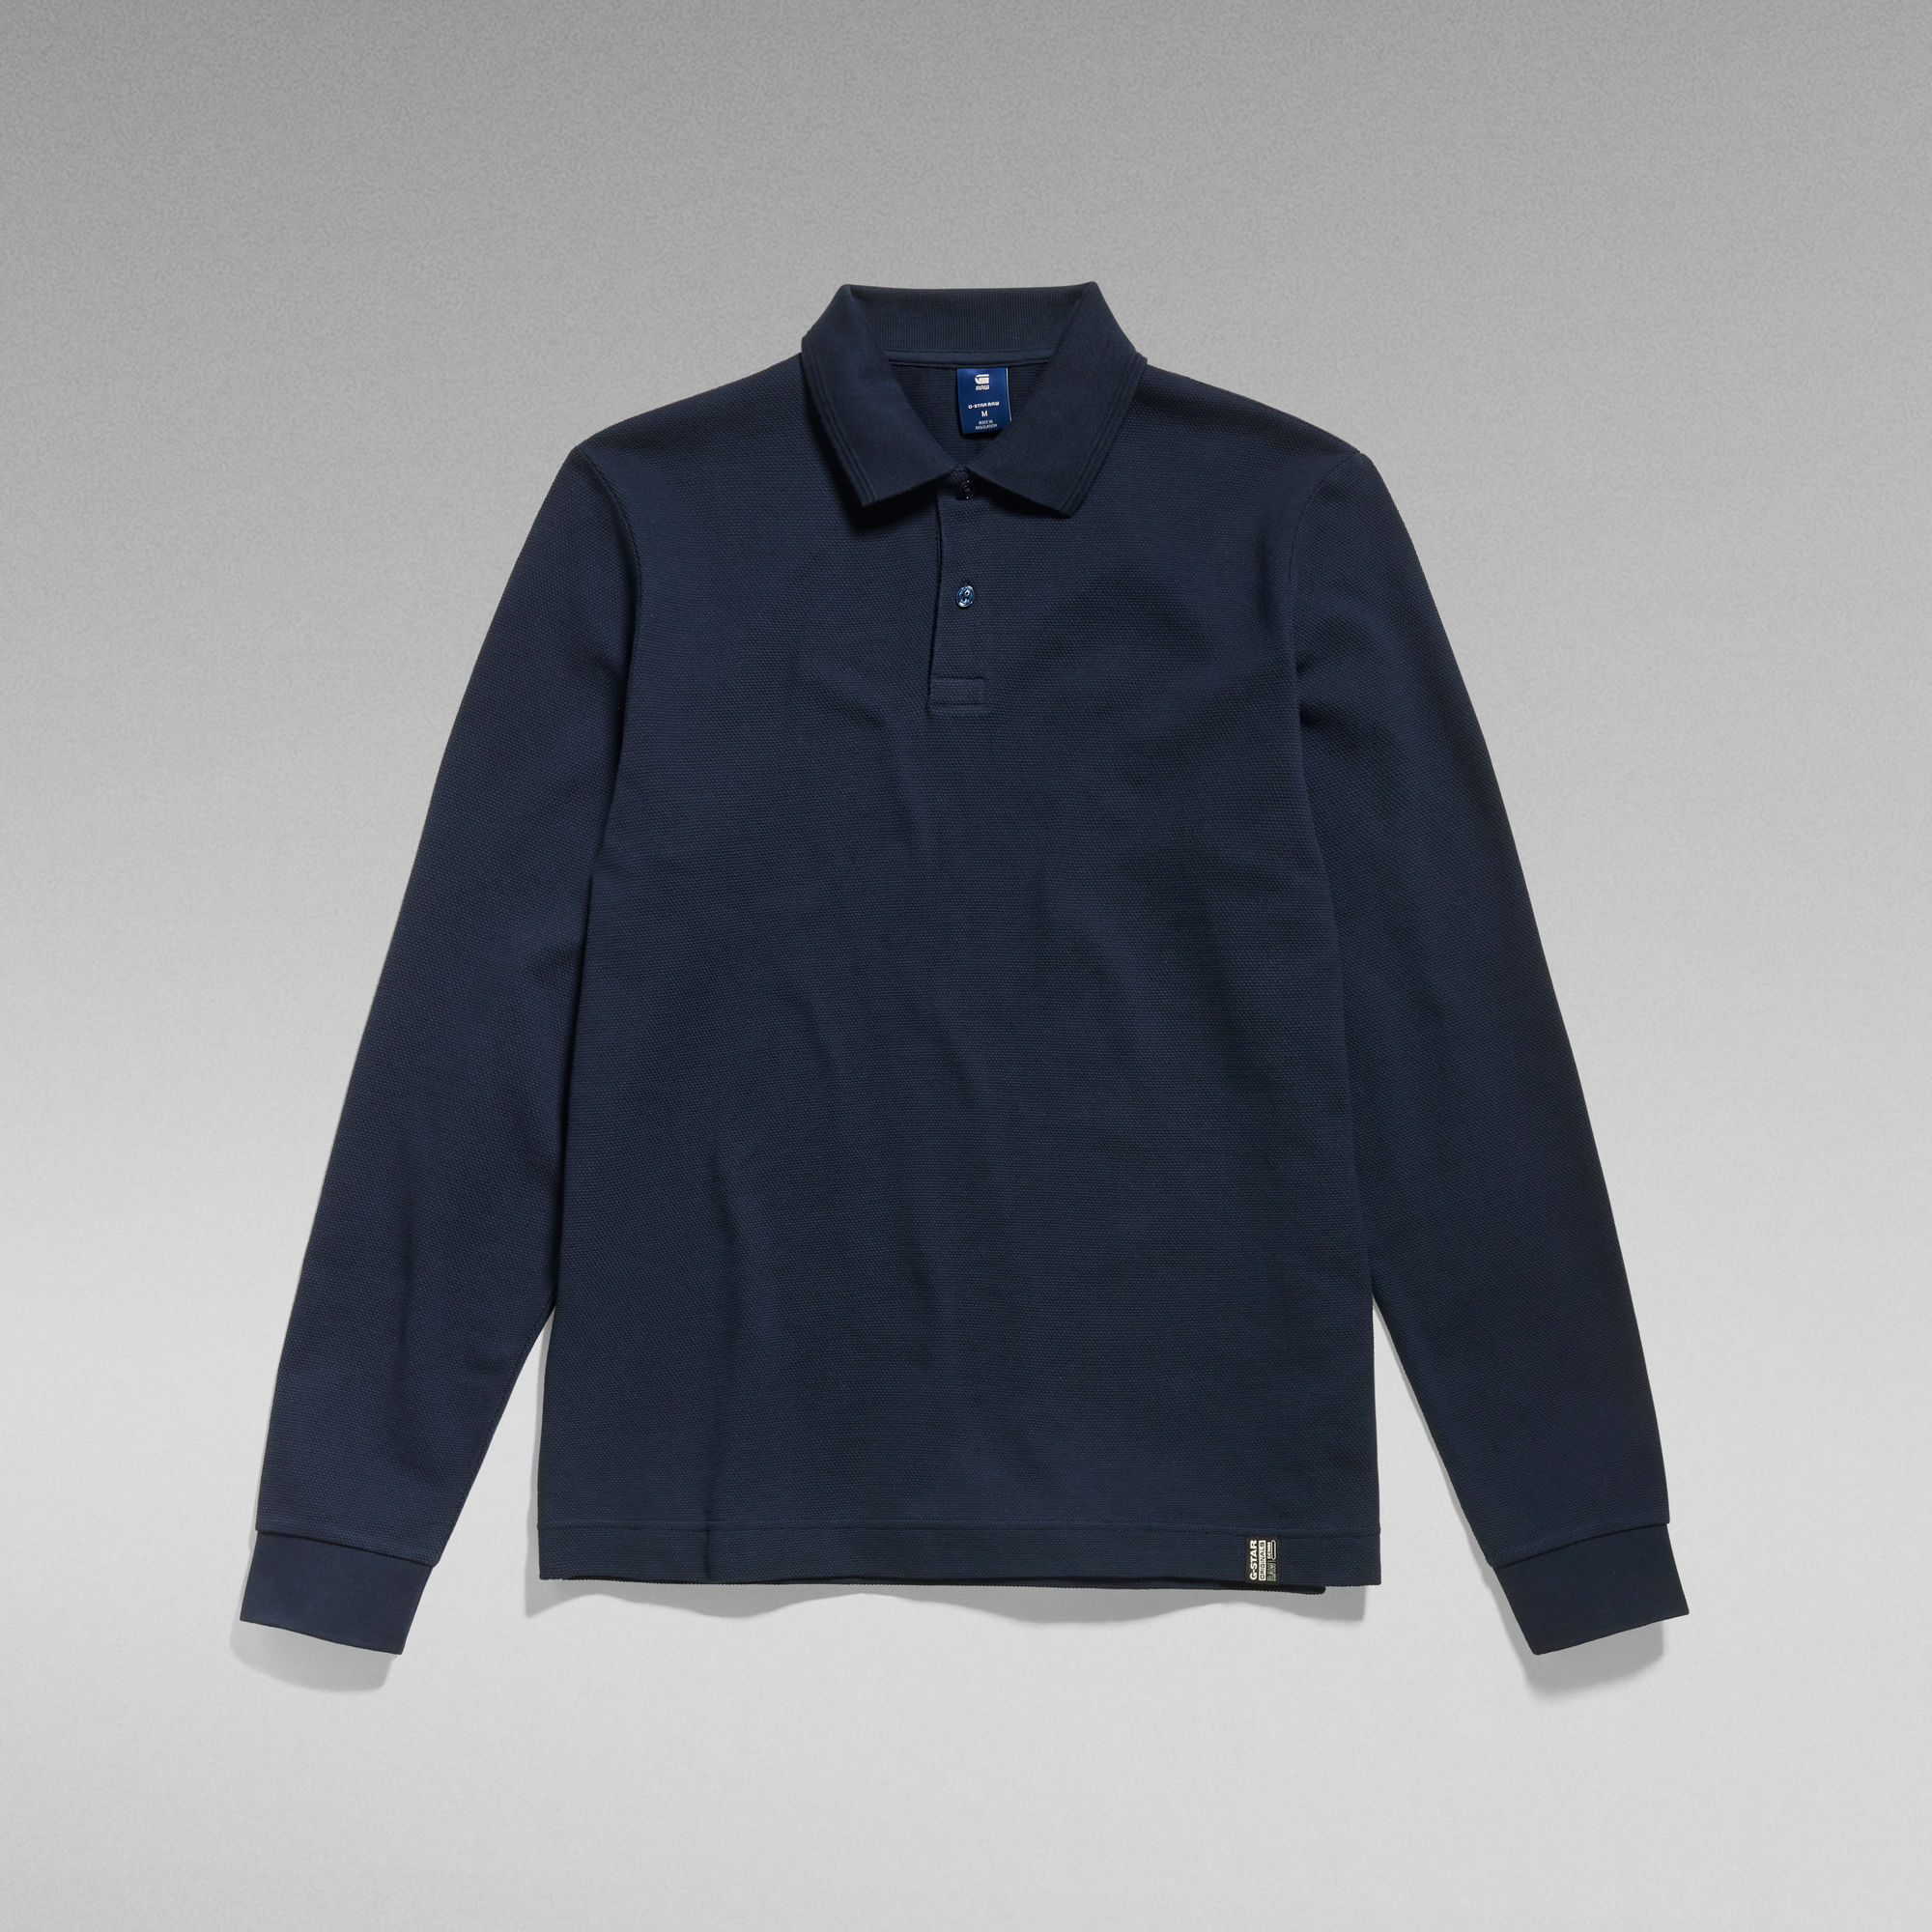 Essential Polo Long Sleeve | Dark blue | G-Star RAW®